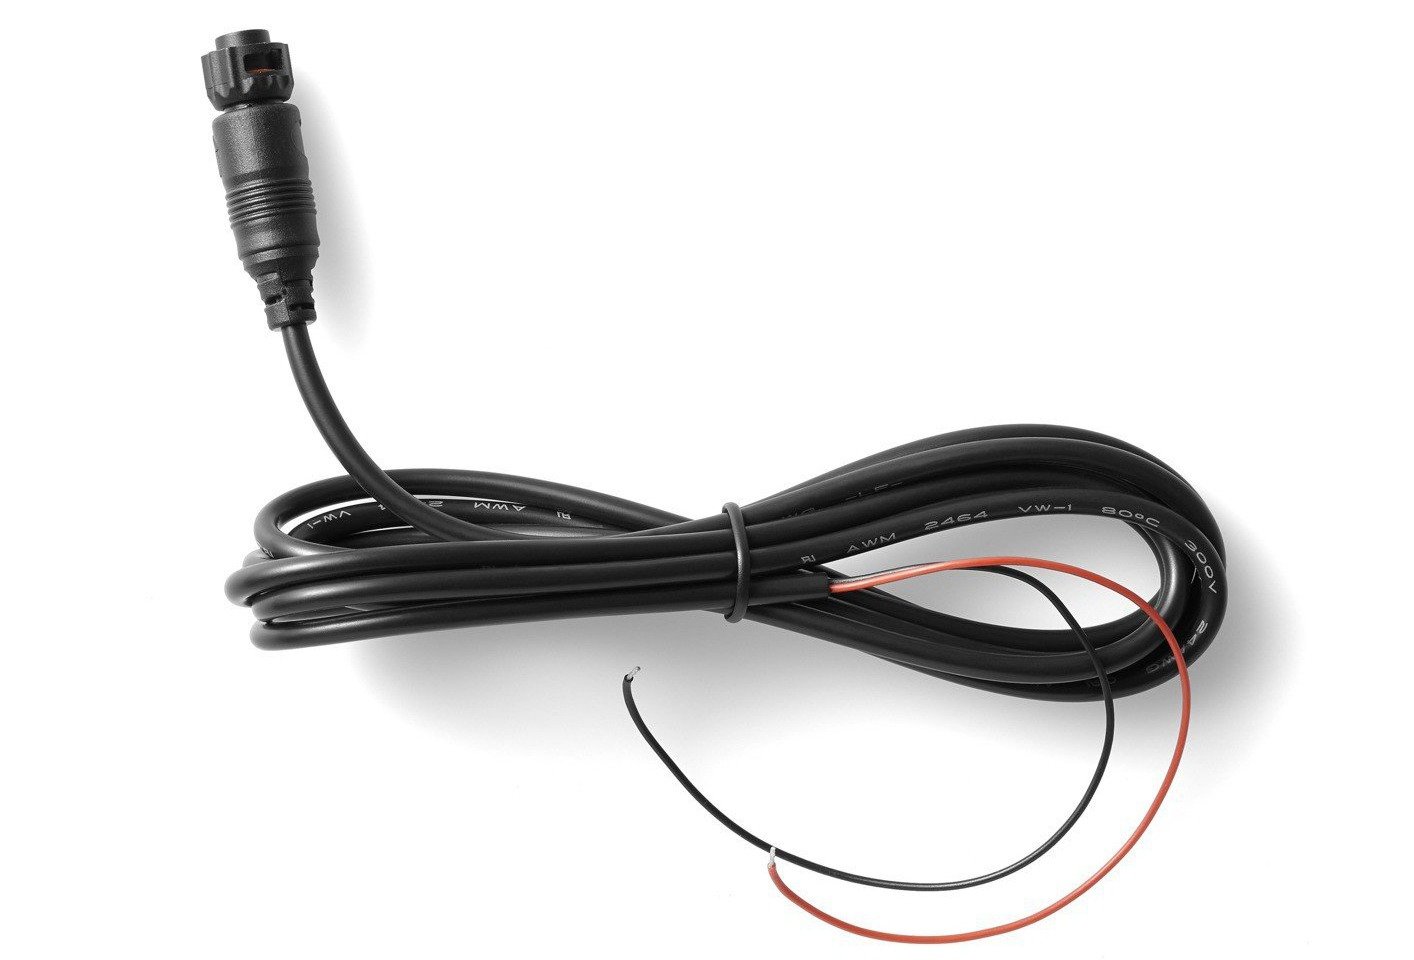 Obrázek produktu náhradní kabel baterie pro navigaci Rider 450/550, TomTom 9UGE.001.04